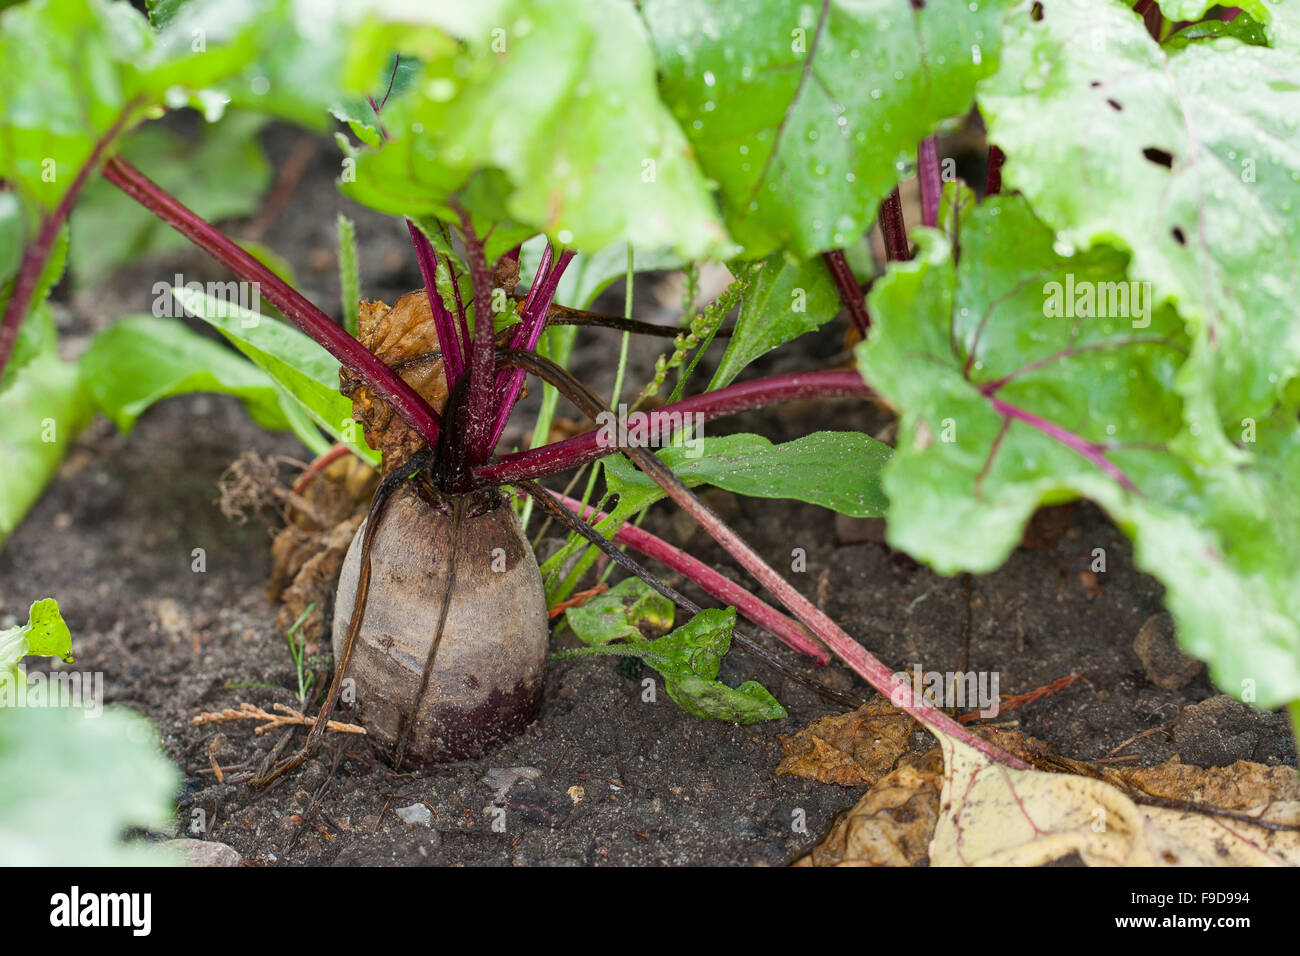 Beetroot, Root beet, garden beet, Rote Beete, Rote Bete, Rote Rübe, Beta vulgaris subsp. vulgaris, Mangel Wurzel Stock Photo